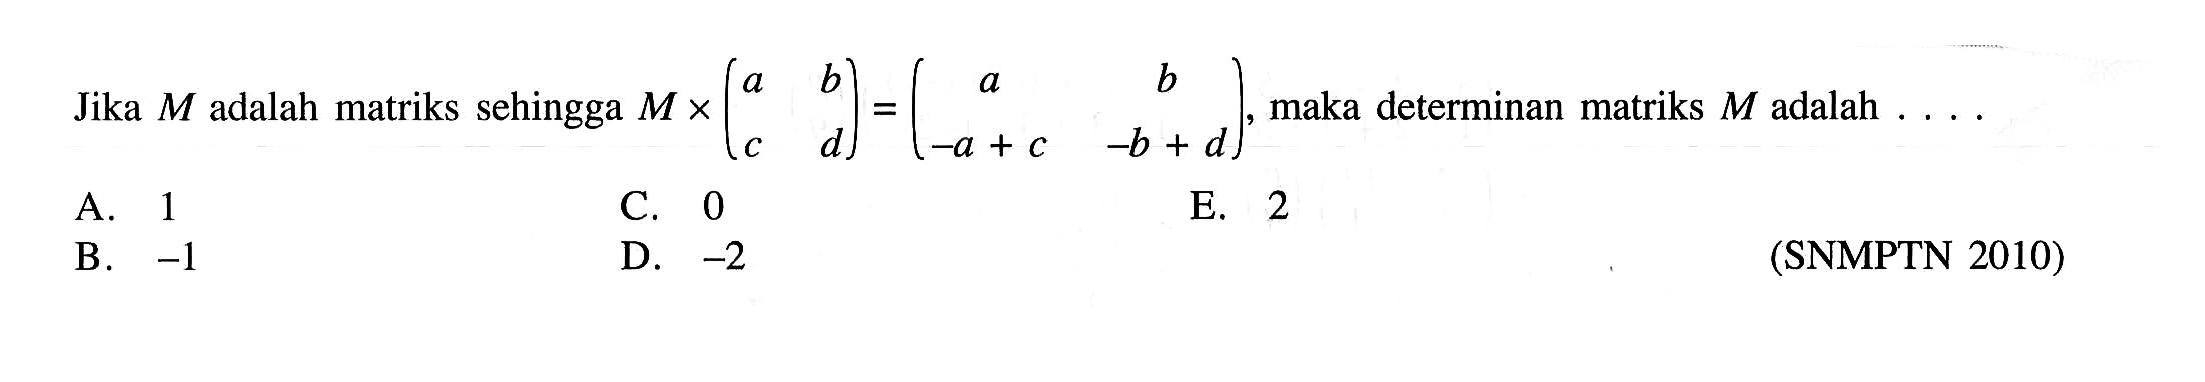 Jika  M  adalah matriks sehingga  M x (a  b  c  d)=(a  b  -a+c  -b+d) , maka determinan matriks  M  adalah  ... . 